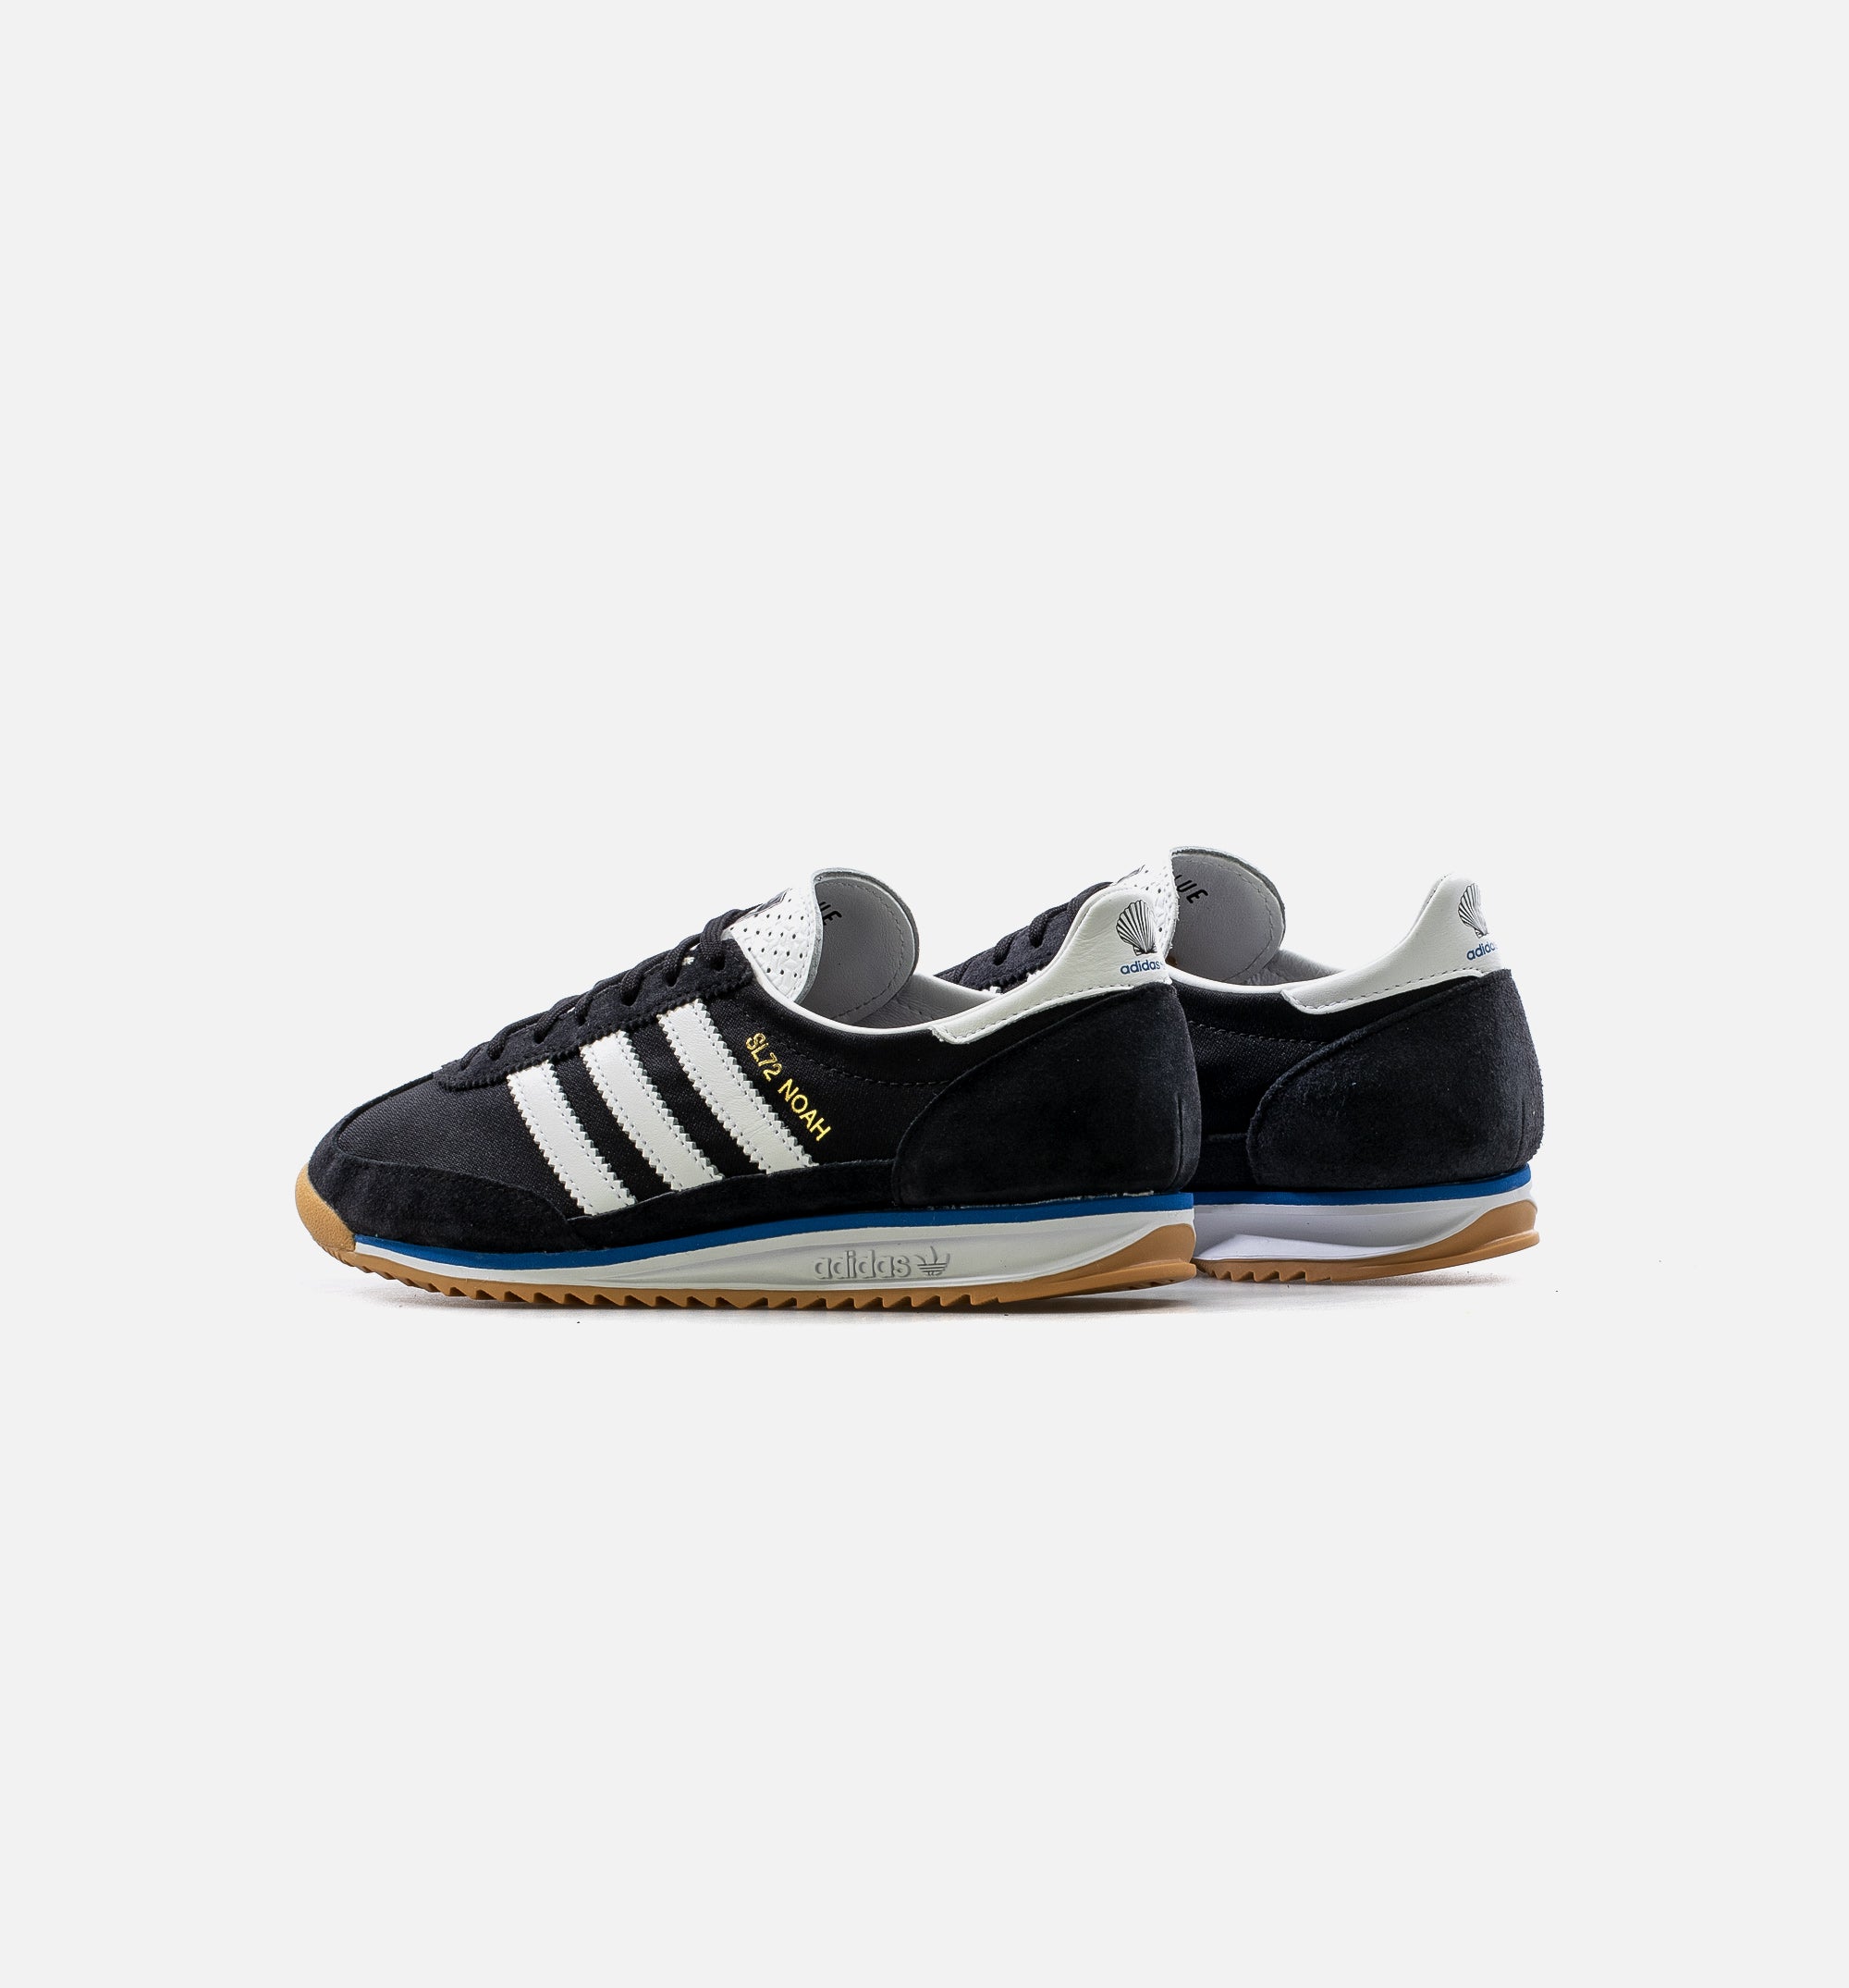 Melancólico tengo hambre llevar a cabo Adidas Consortium FW7857 SL 72 Noah Mens Lifestyle Shoe -  Black/White/Blue/Gum – ShopNiceKicks.com